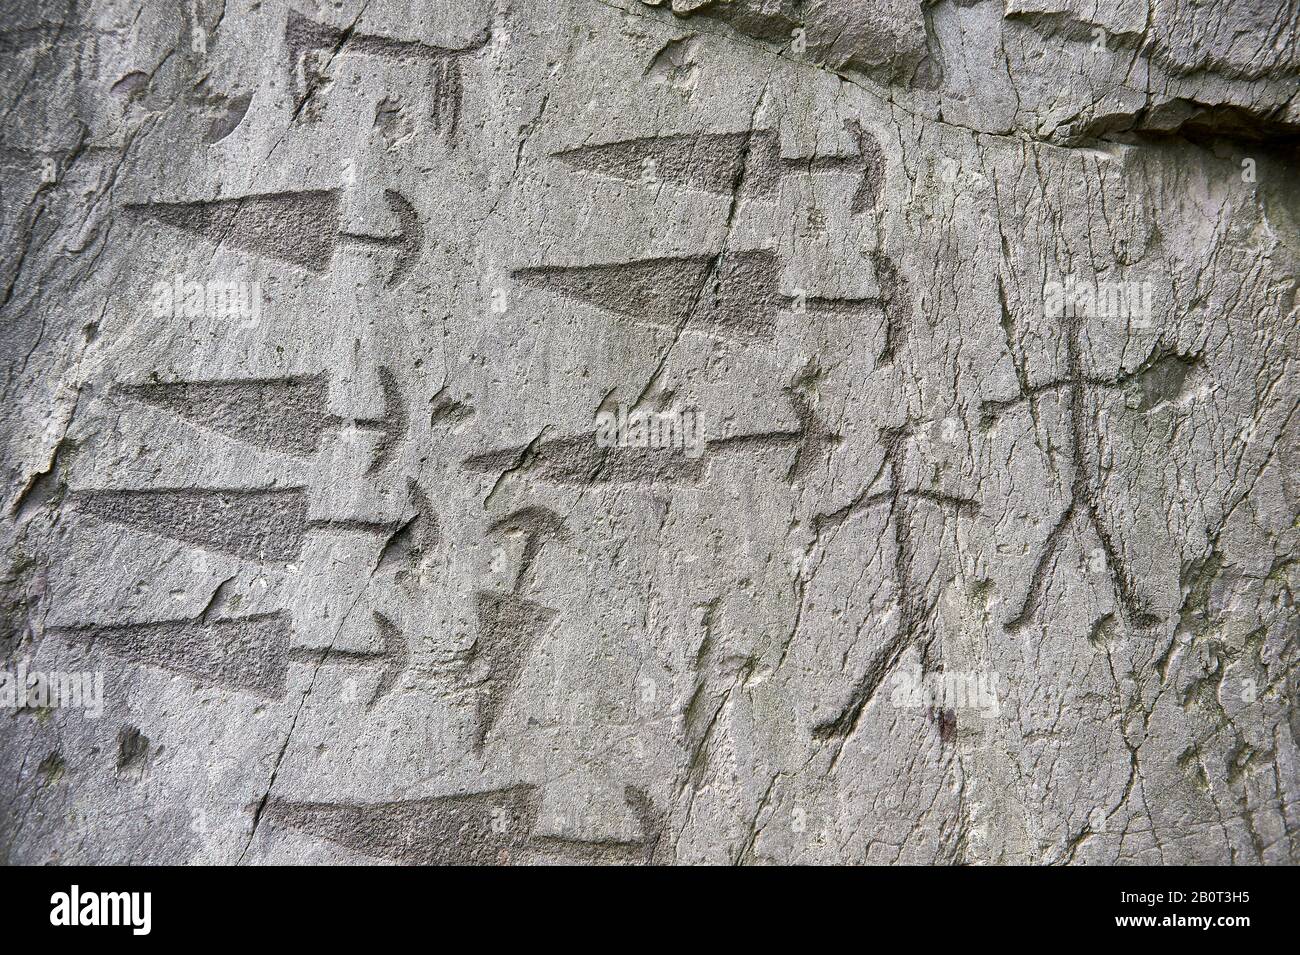 Prähistorische Petroglyphen, Felsschnitzereien, Details von Trangular Dolches mit halbrunden Prunkstücken und schematische Darstellungen menschlicher Figuren in einer anci Stockfoto